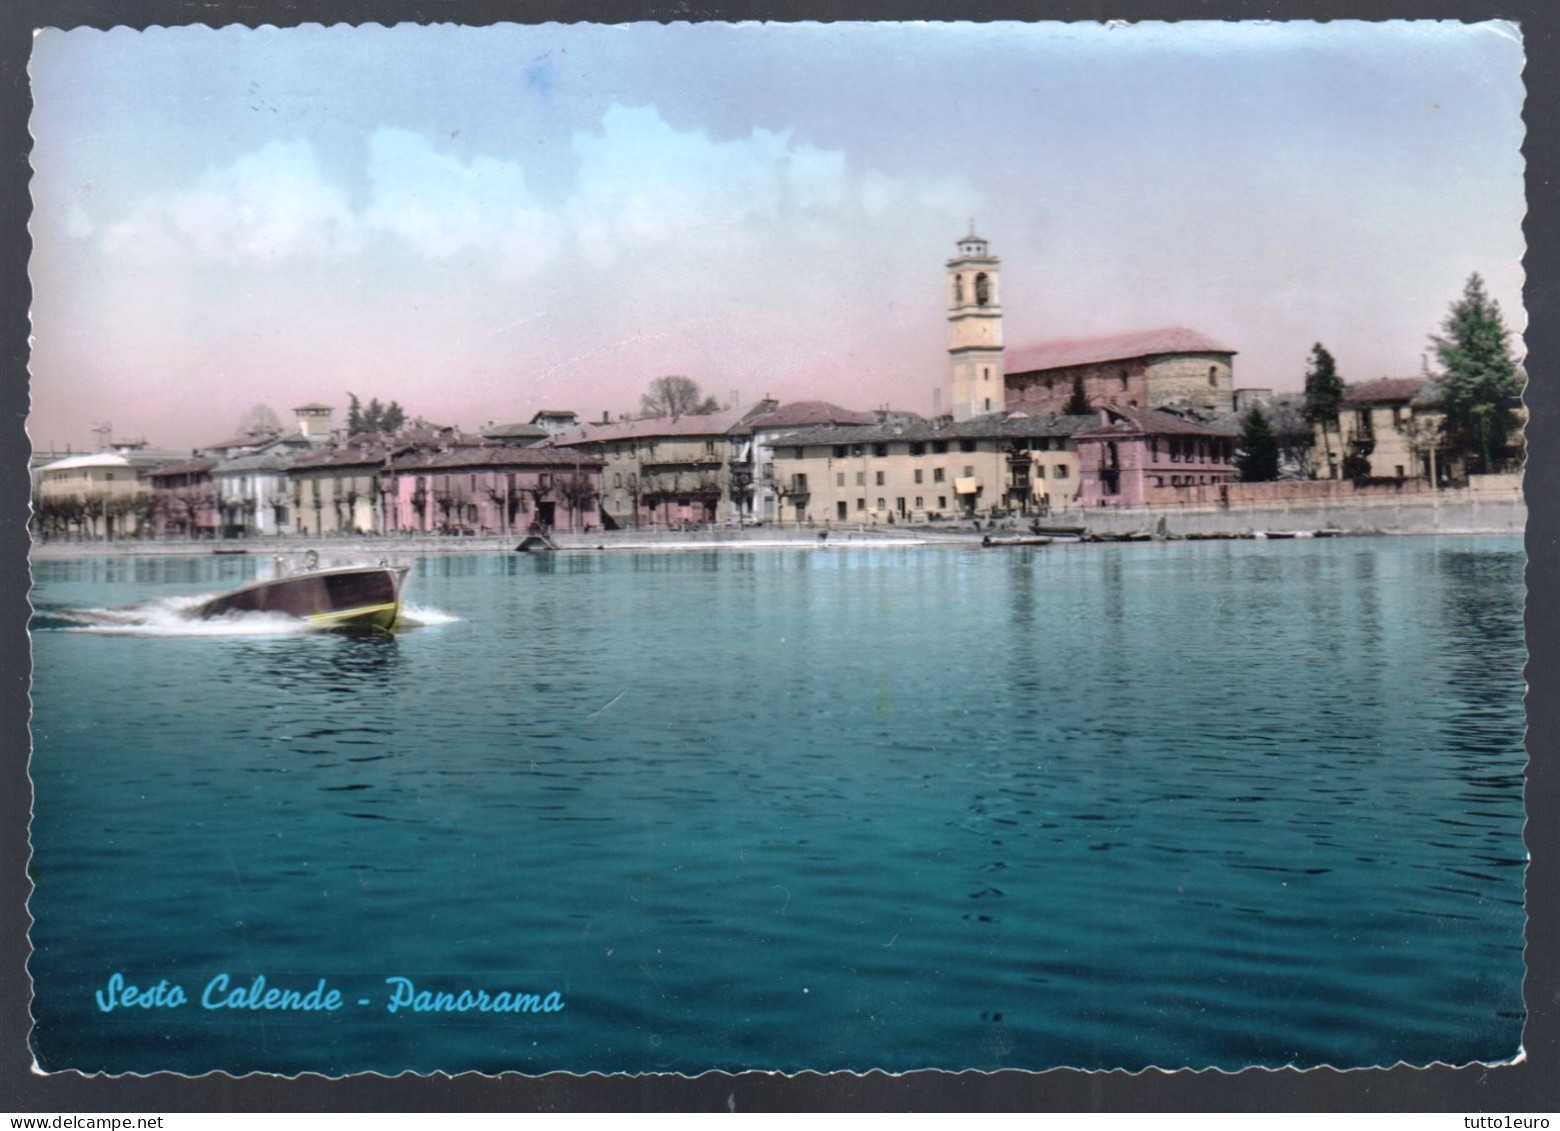 SESTO CALENDE - VARESE - 1959 -  PANORAMA CON MOTOSCAFO - Houseboats